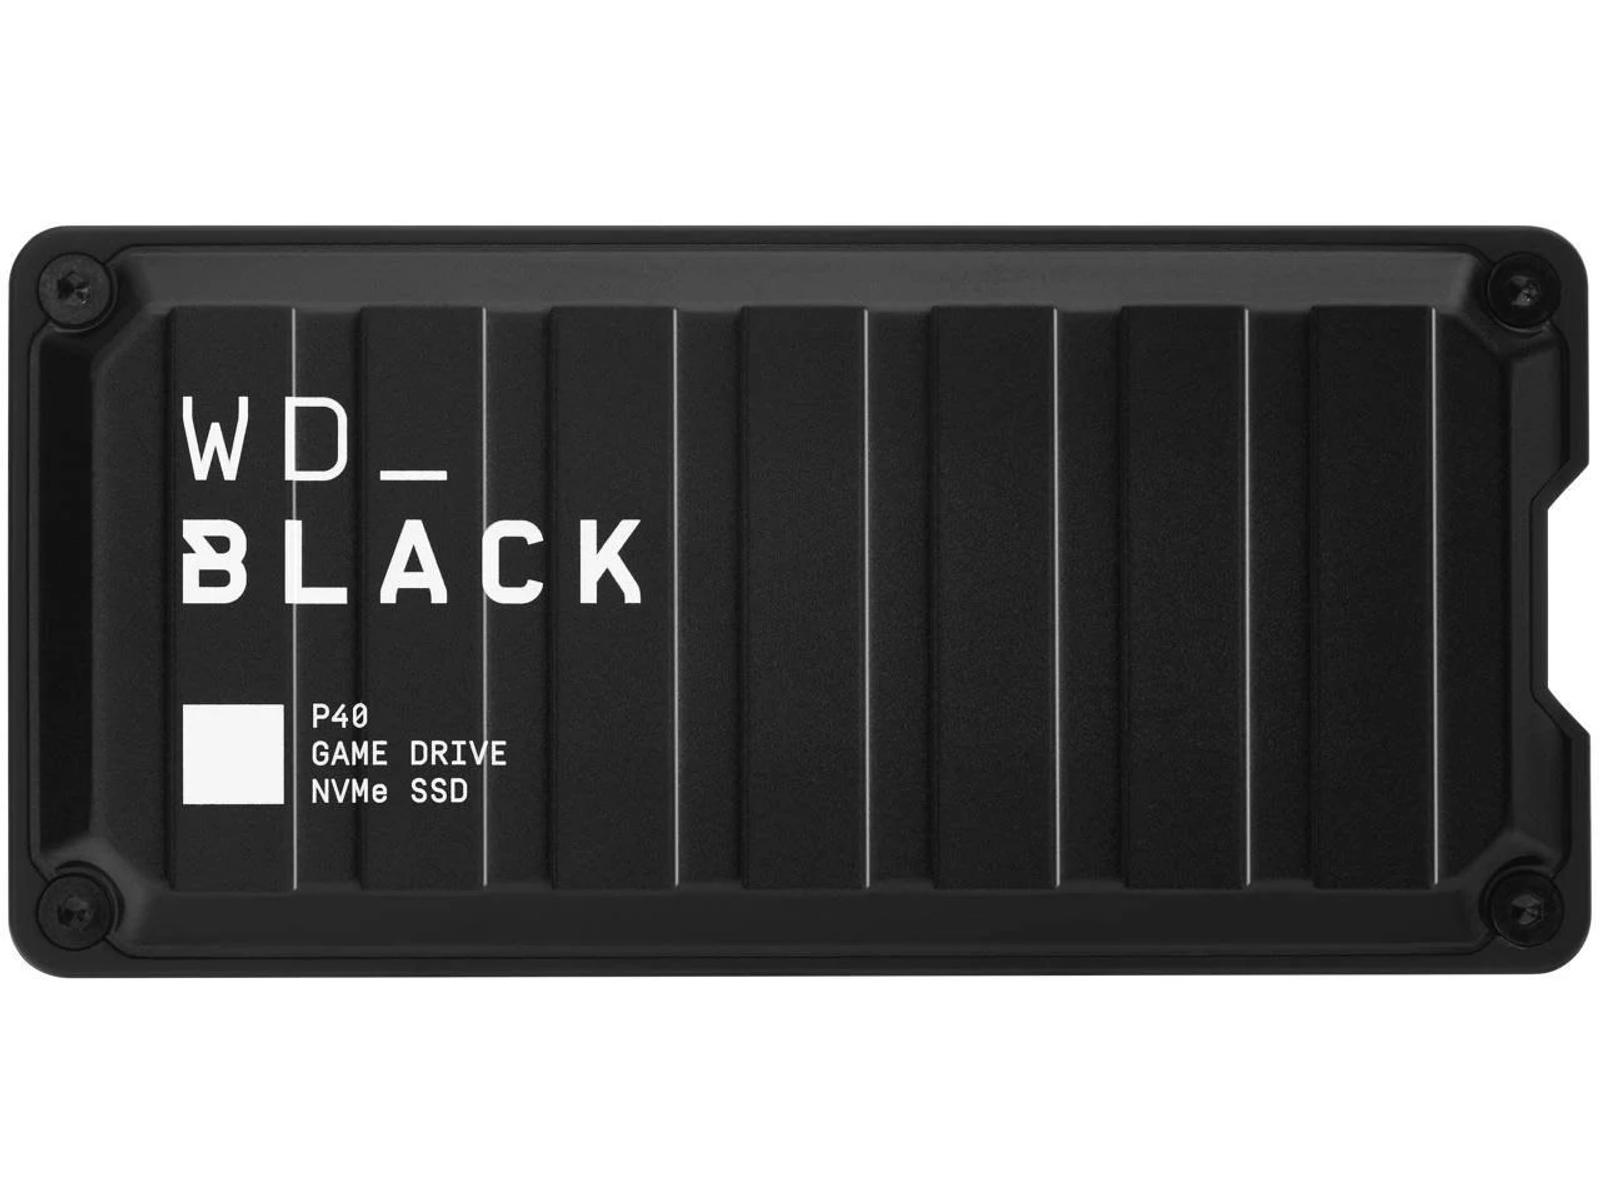 SANDISK WDBAWY5000ABK-WESN WD_BLACK 500GB P40 2,5 DRIVE 500 Zoll, S, Schwarz SSD, GAME extern, GB